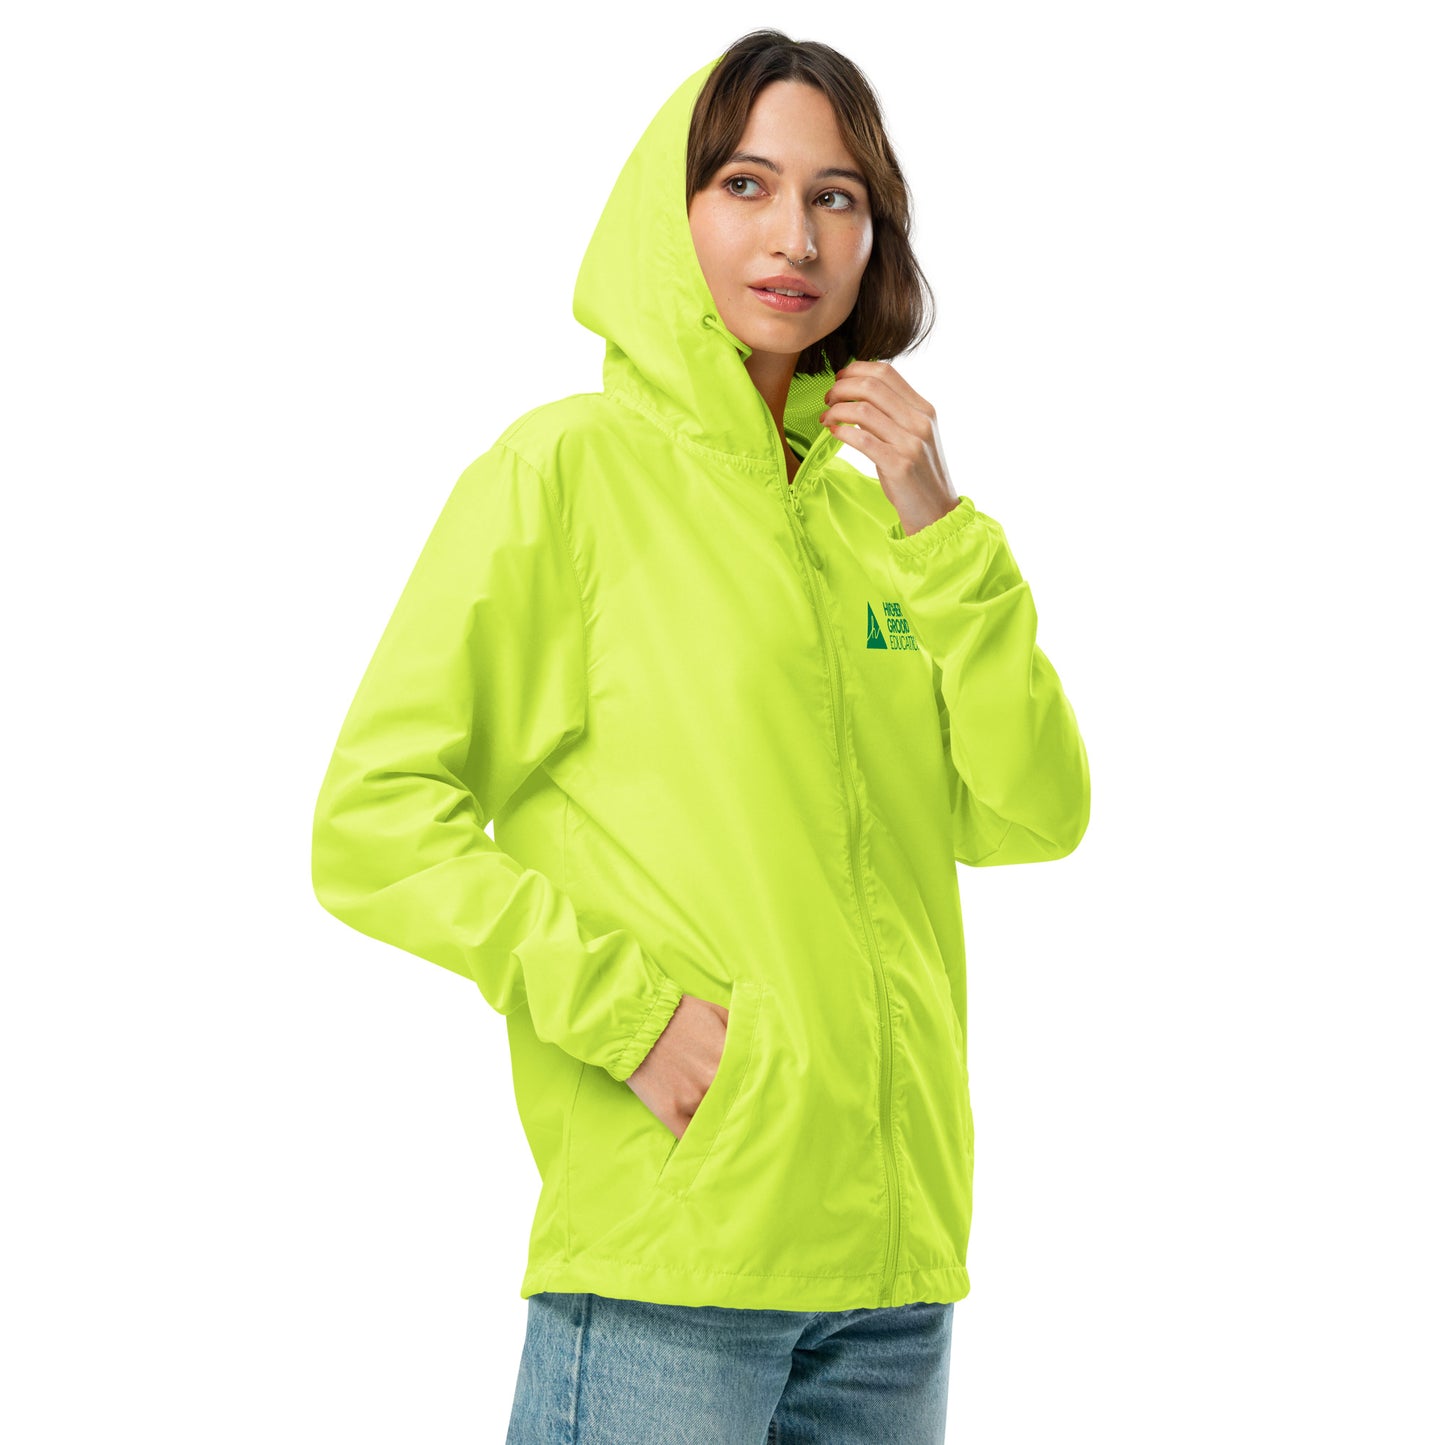 Unisex lightweight zip up windbreaker jacket